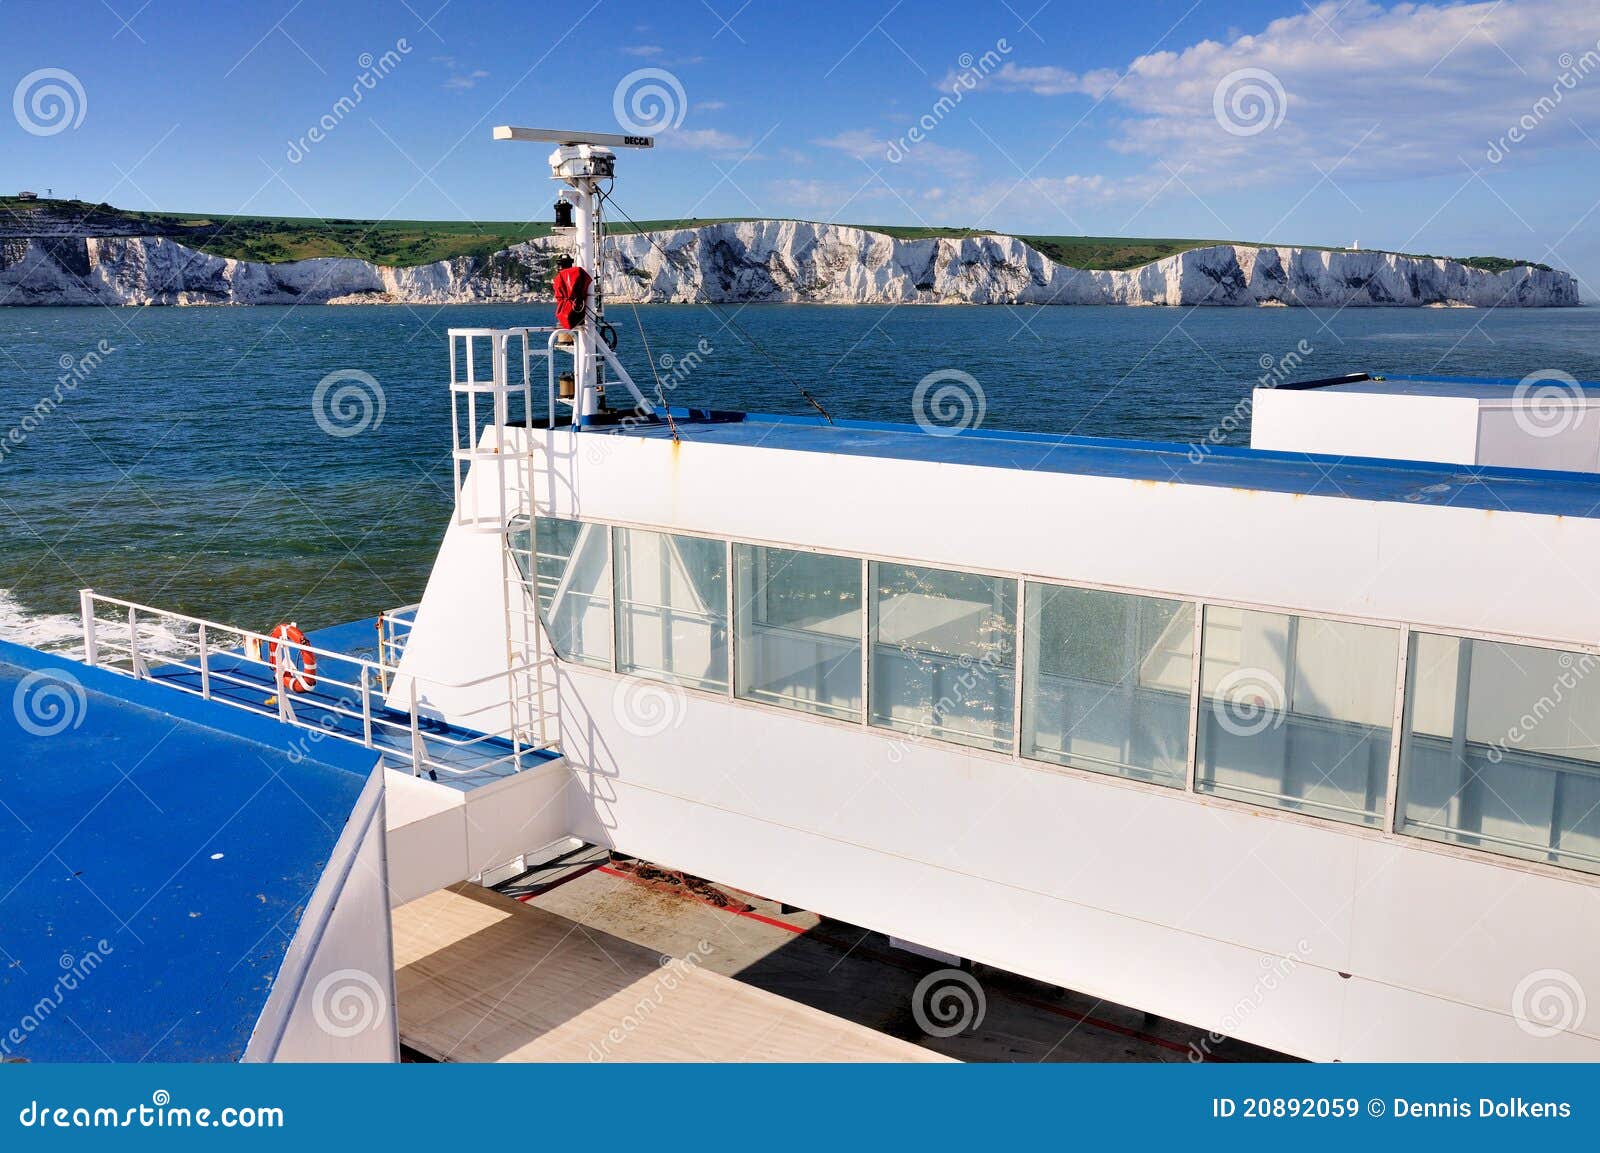 Scogliere bianche di Dover da un traghetto. Le scogliere bianche di Dover (Inghilterra) vedute dal mare a bordo di un traghetto.